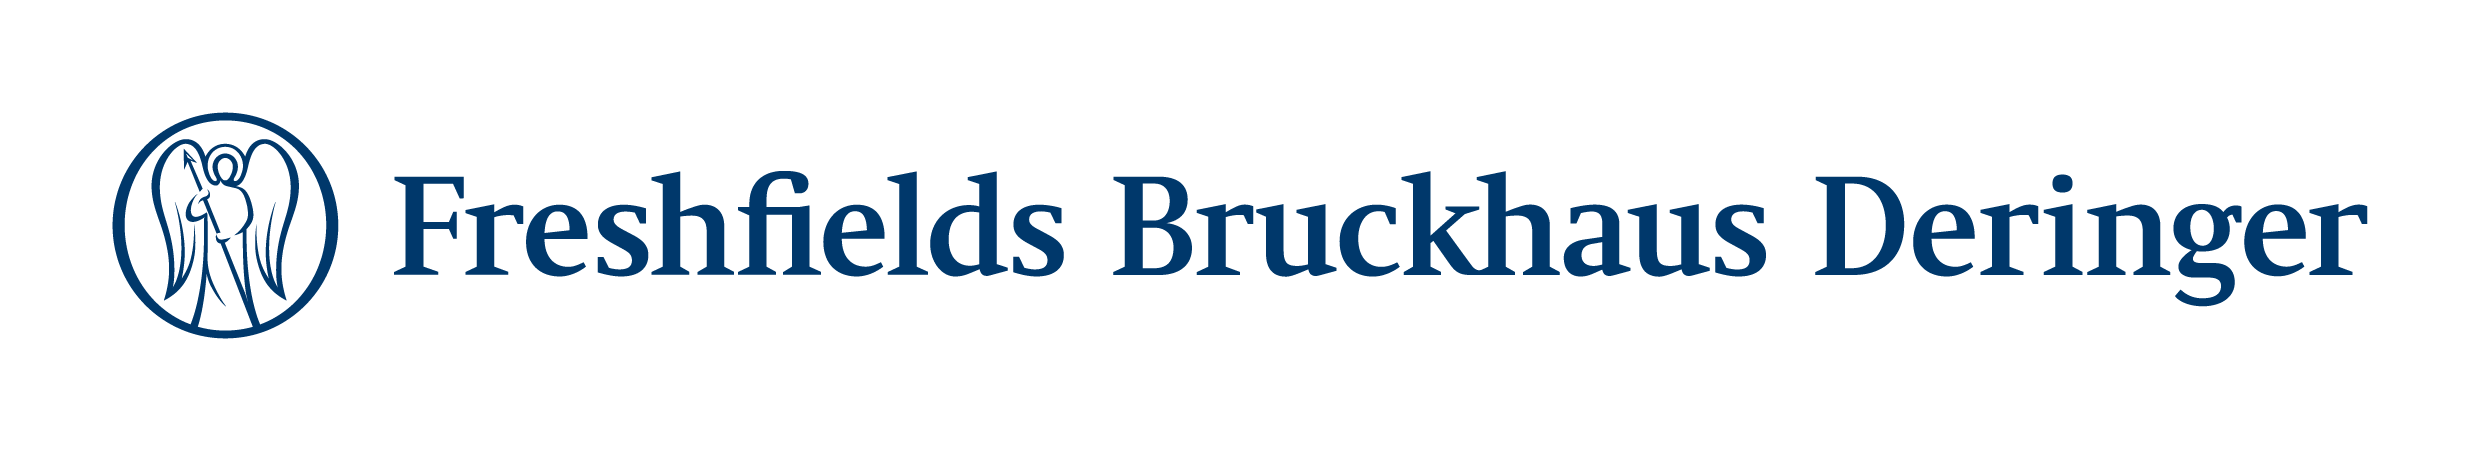 Freshfields Bruckhaus Deringer Logo RGB_HR